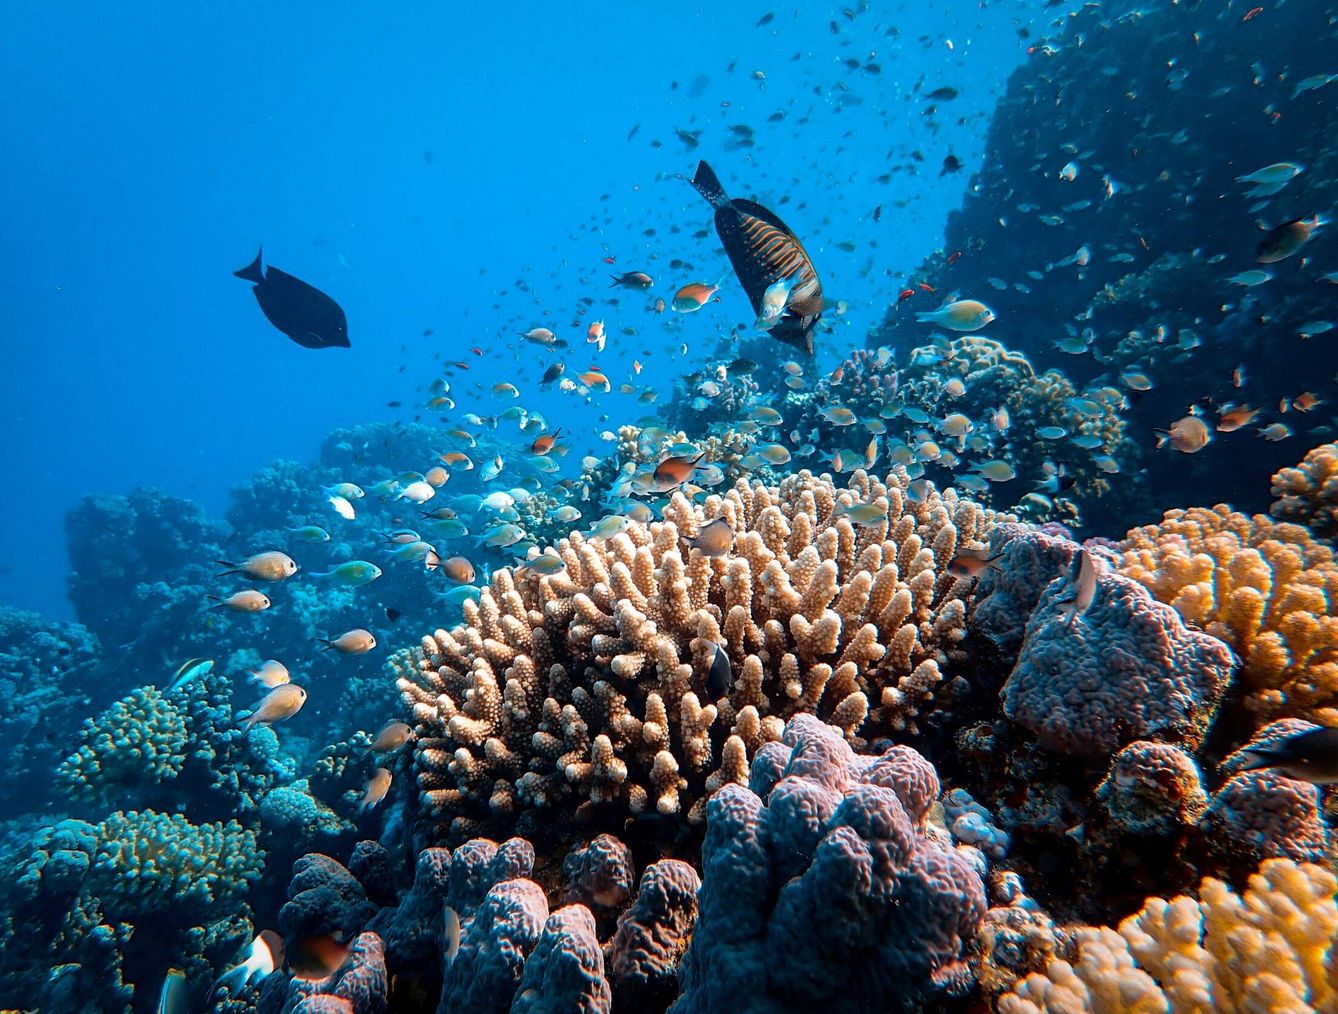 La conservación de la biodiversidad marina australiana pasa por conservar la Gran Barrera de Coral. Unsplash